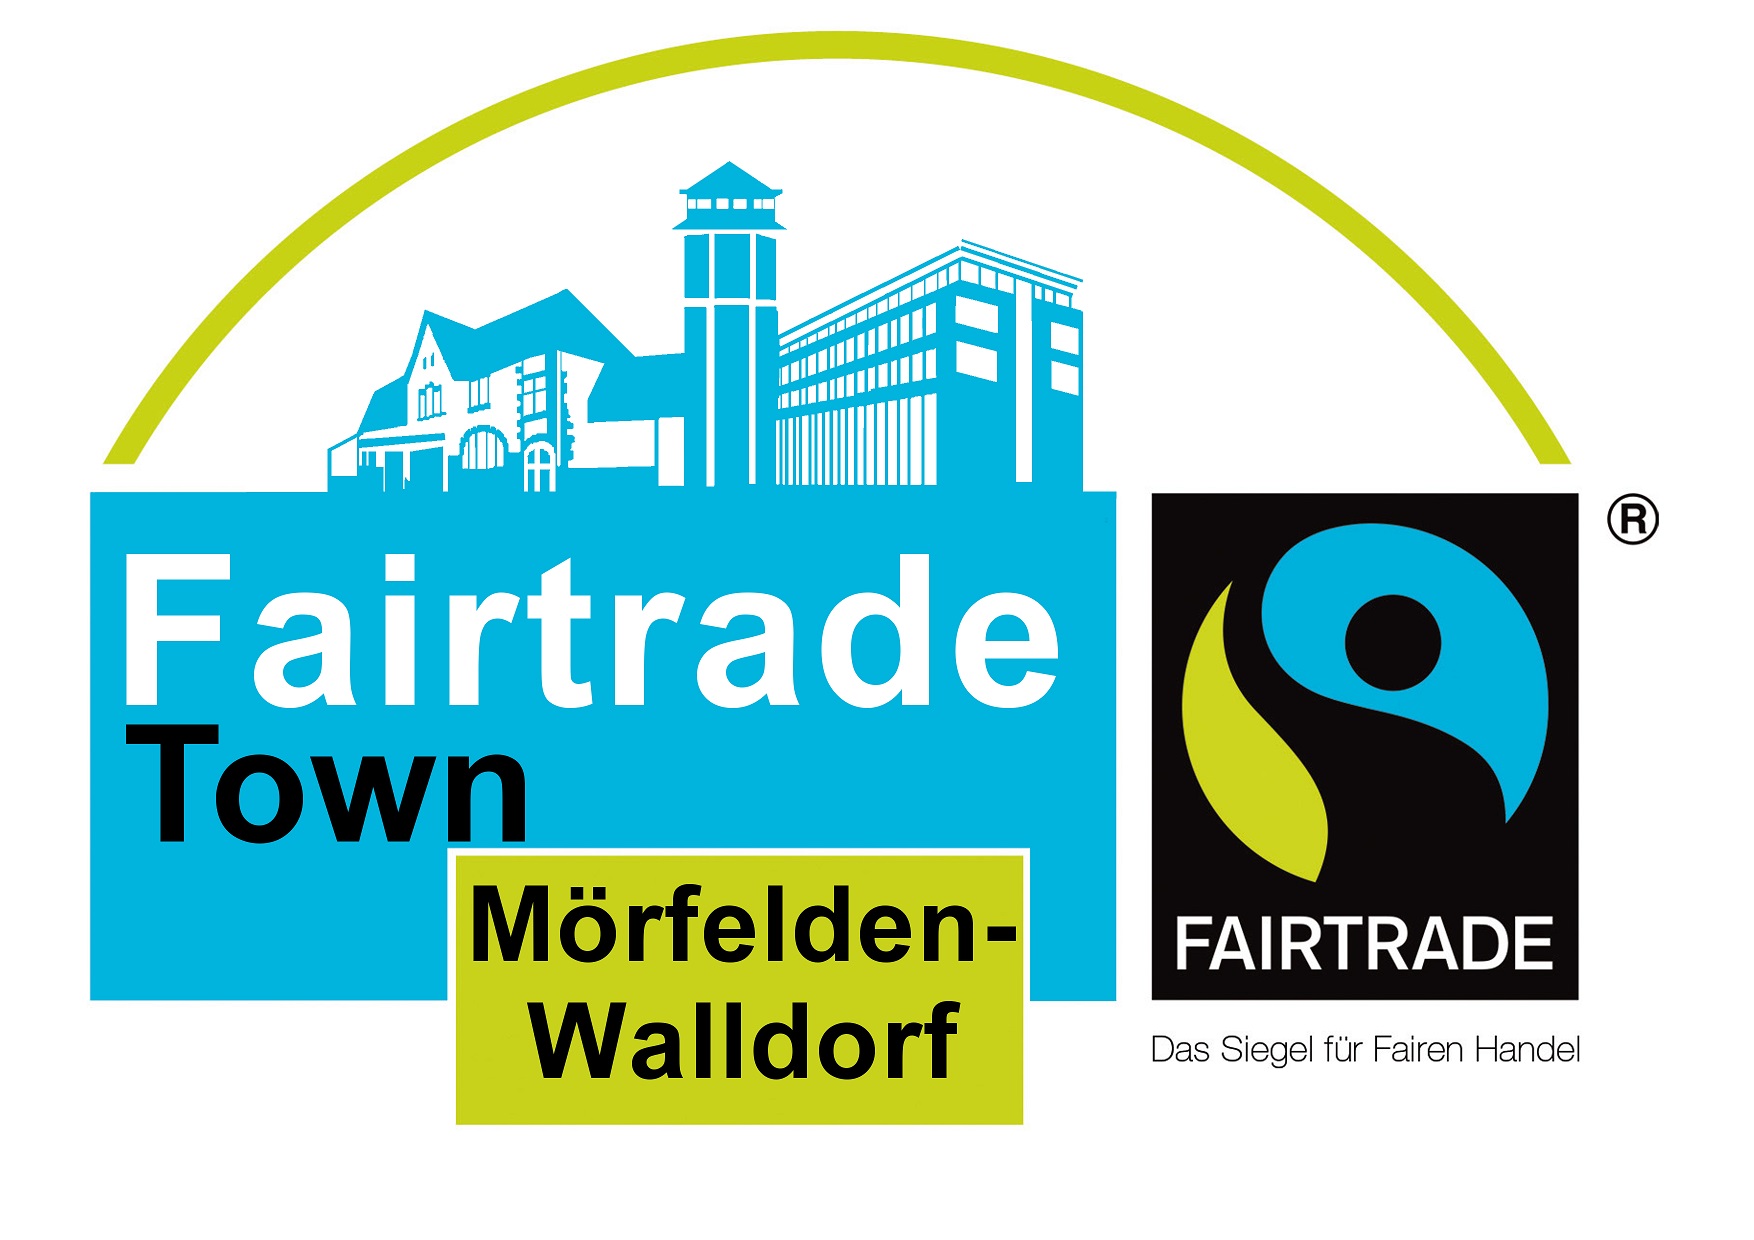 Bild: Zu sehen ist das Fairtrade-Logo